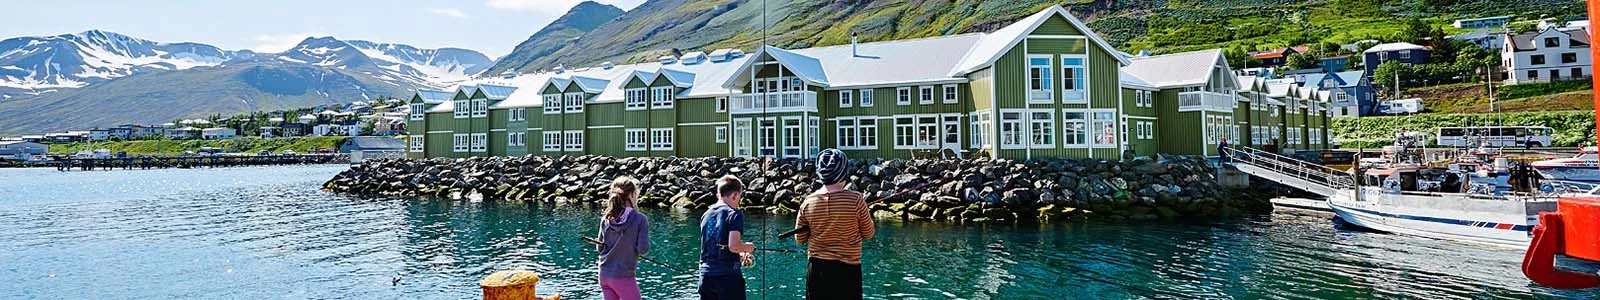 Beste reistijd IJsland